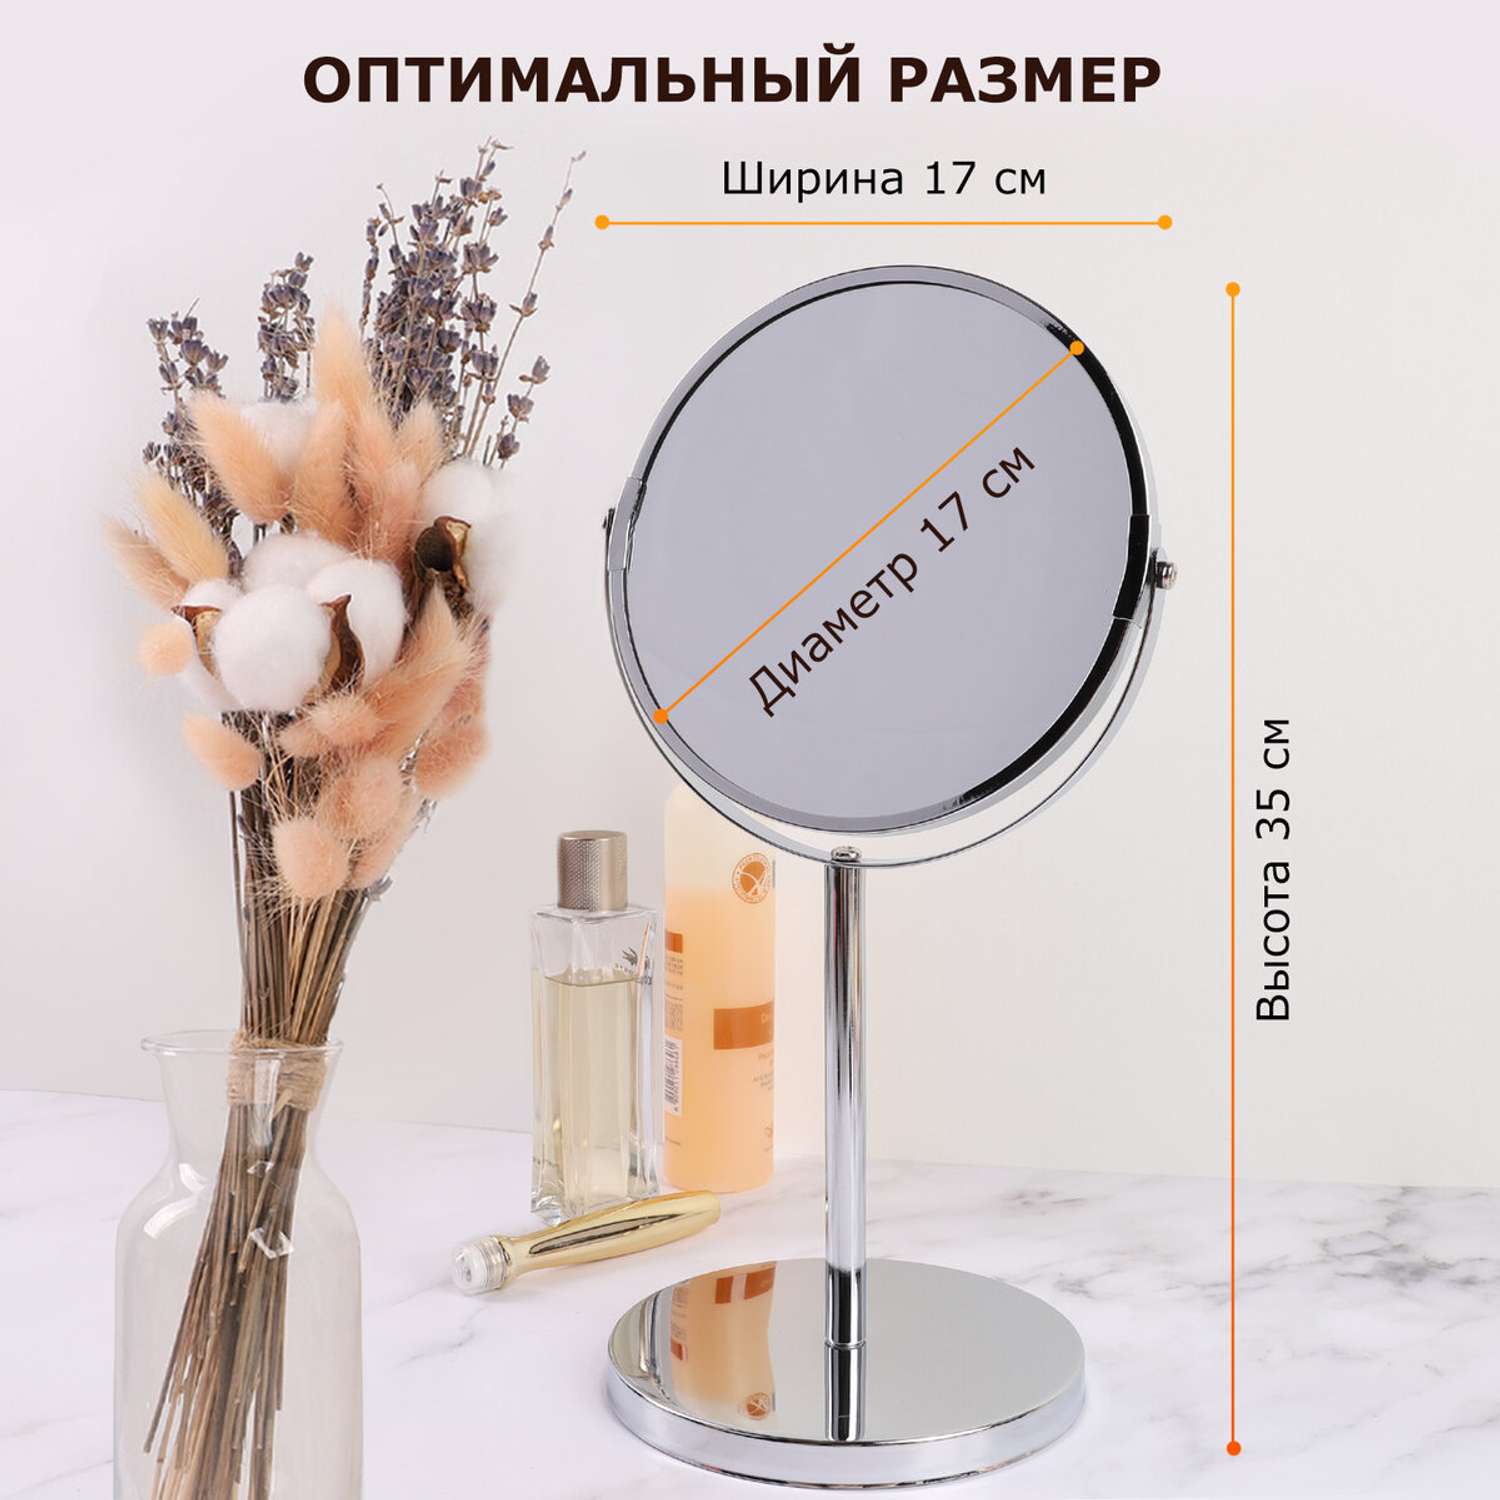 Зеркало с увеличением Лайма настольное круглое для макияжа диаметр 17 см - фото 4